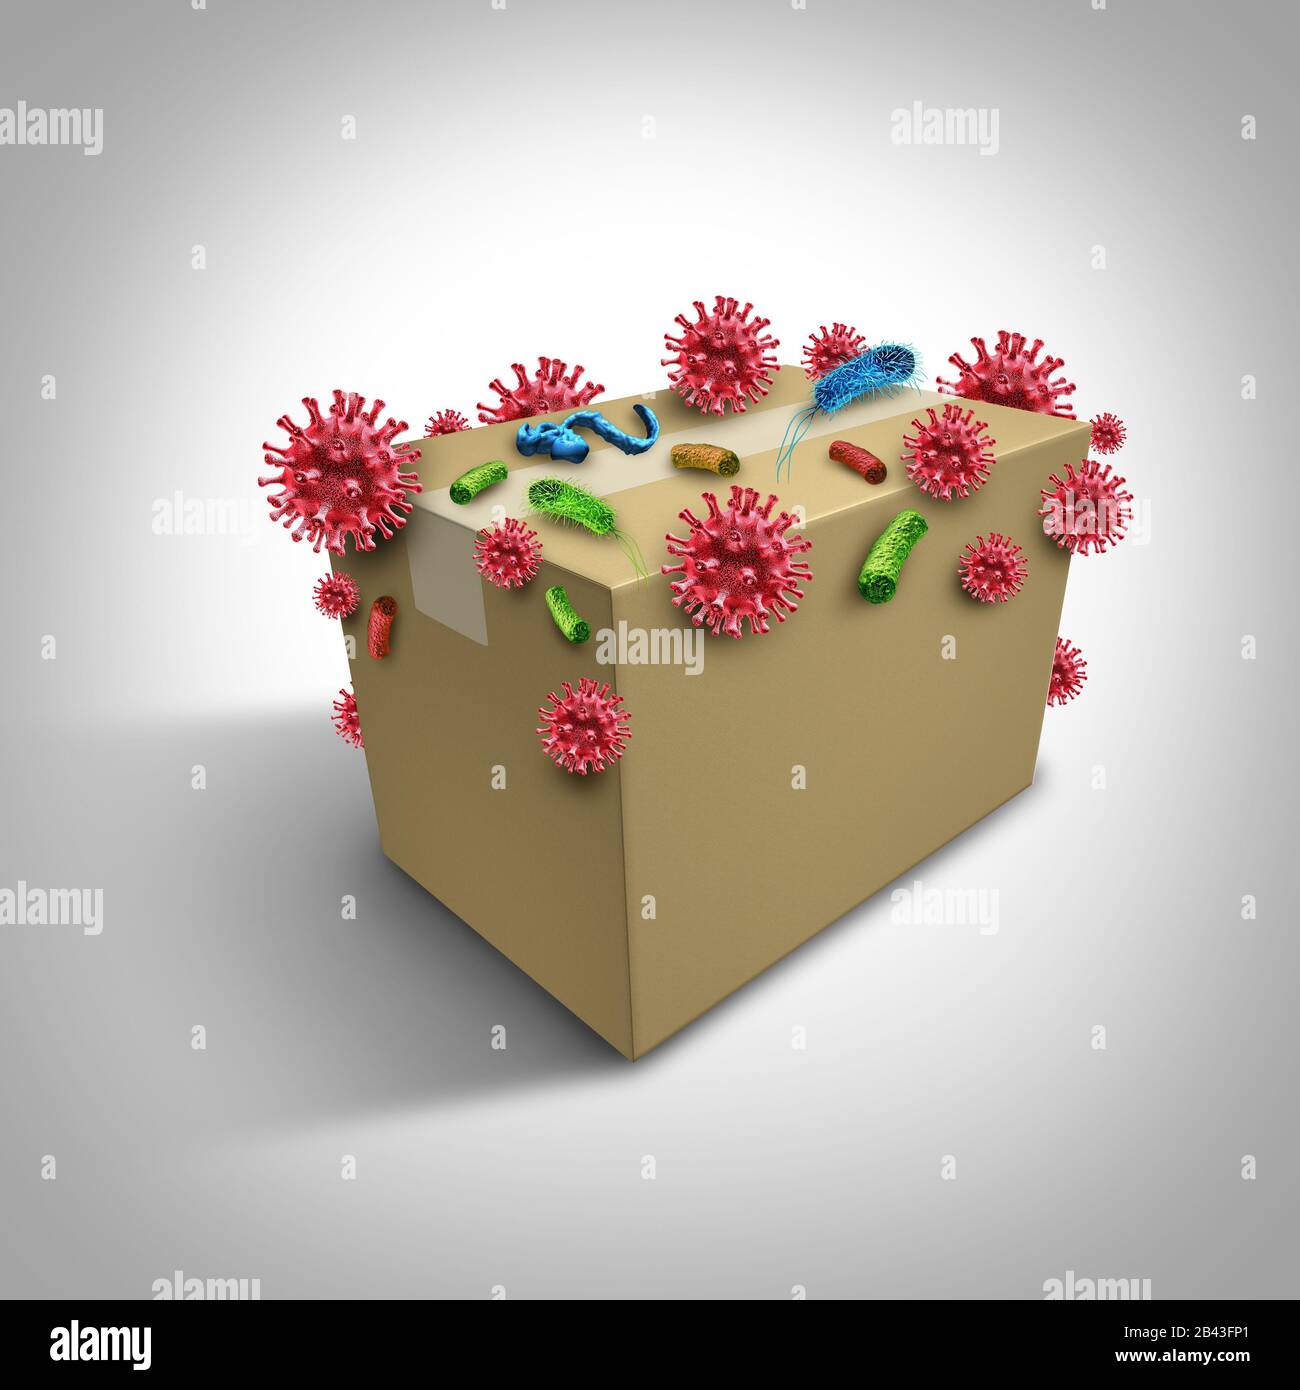 Keime und Krankheiten auf dem Lieferpaket als verschlossener Karton mit Virus- und Bakterienzellen, der das Konzept der Gesundheit und Hygiene darstellt. Stockfoto